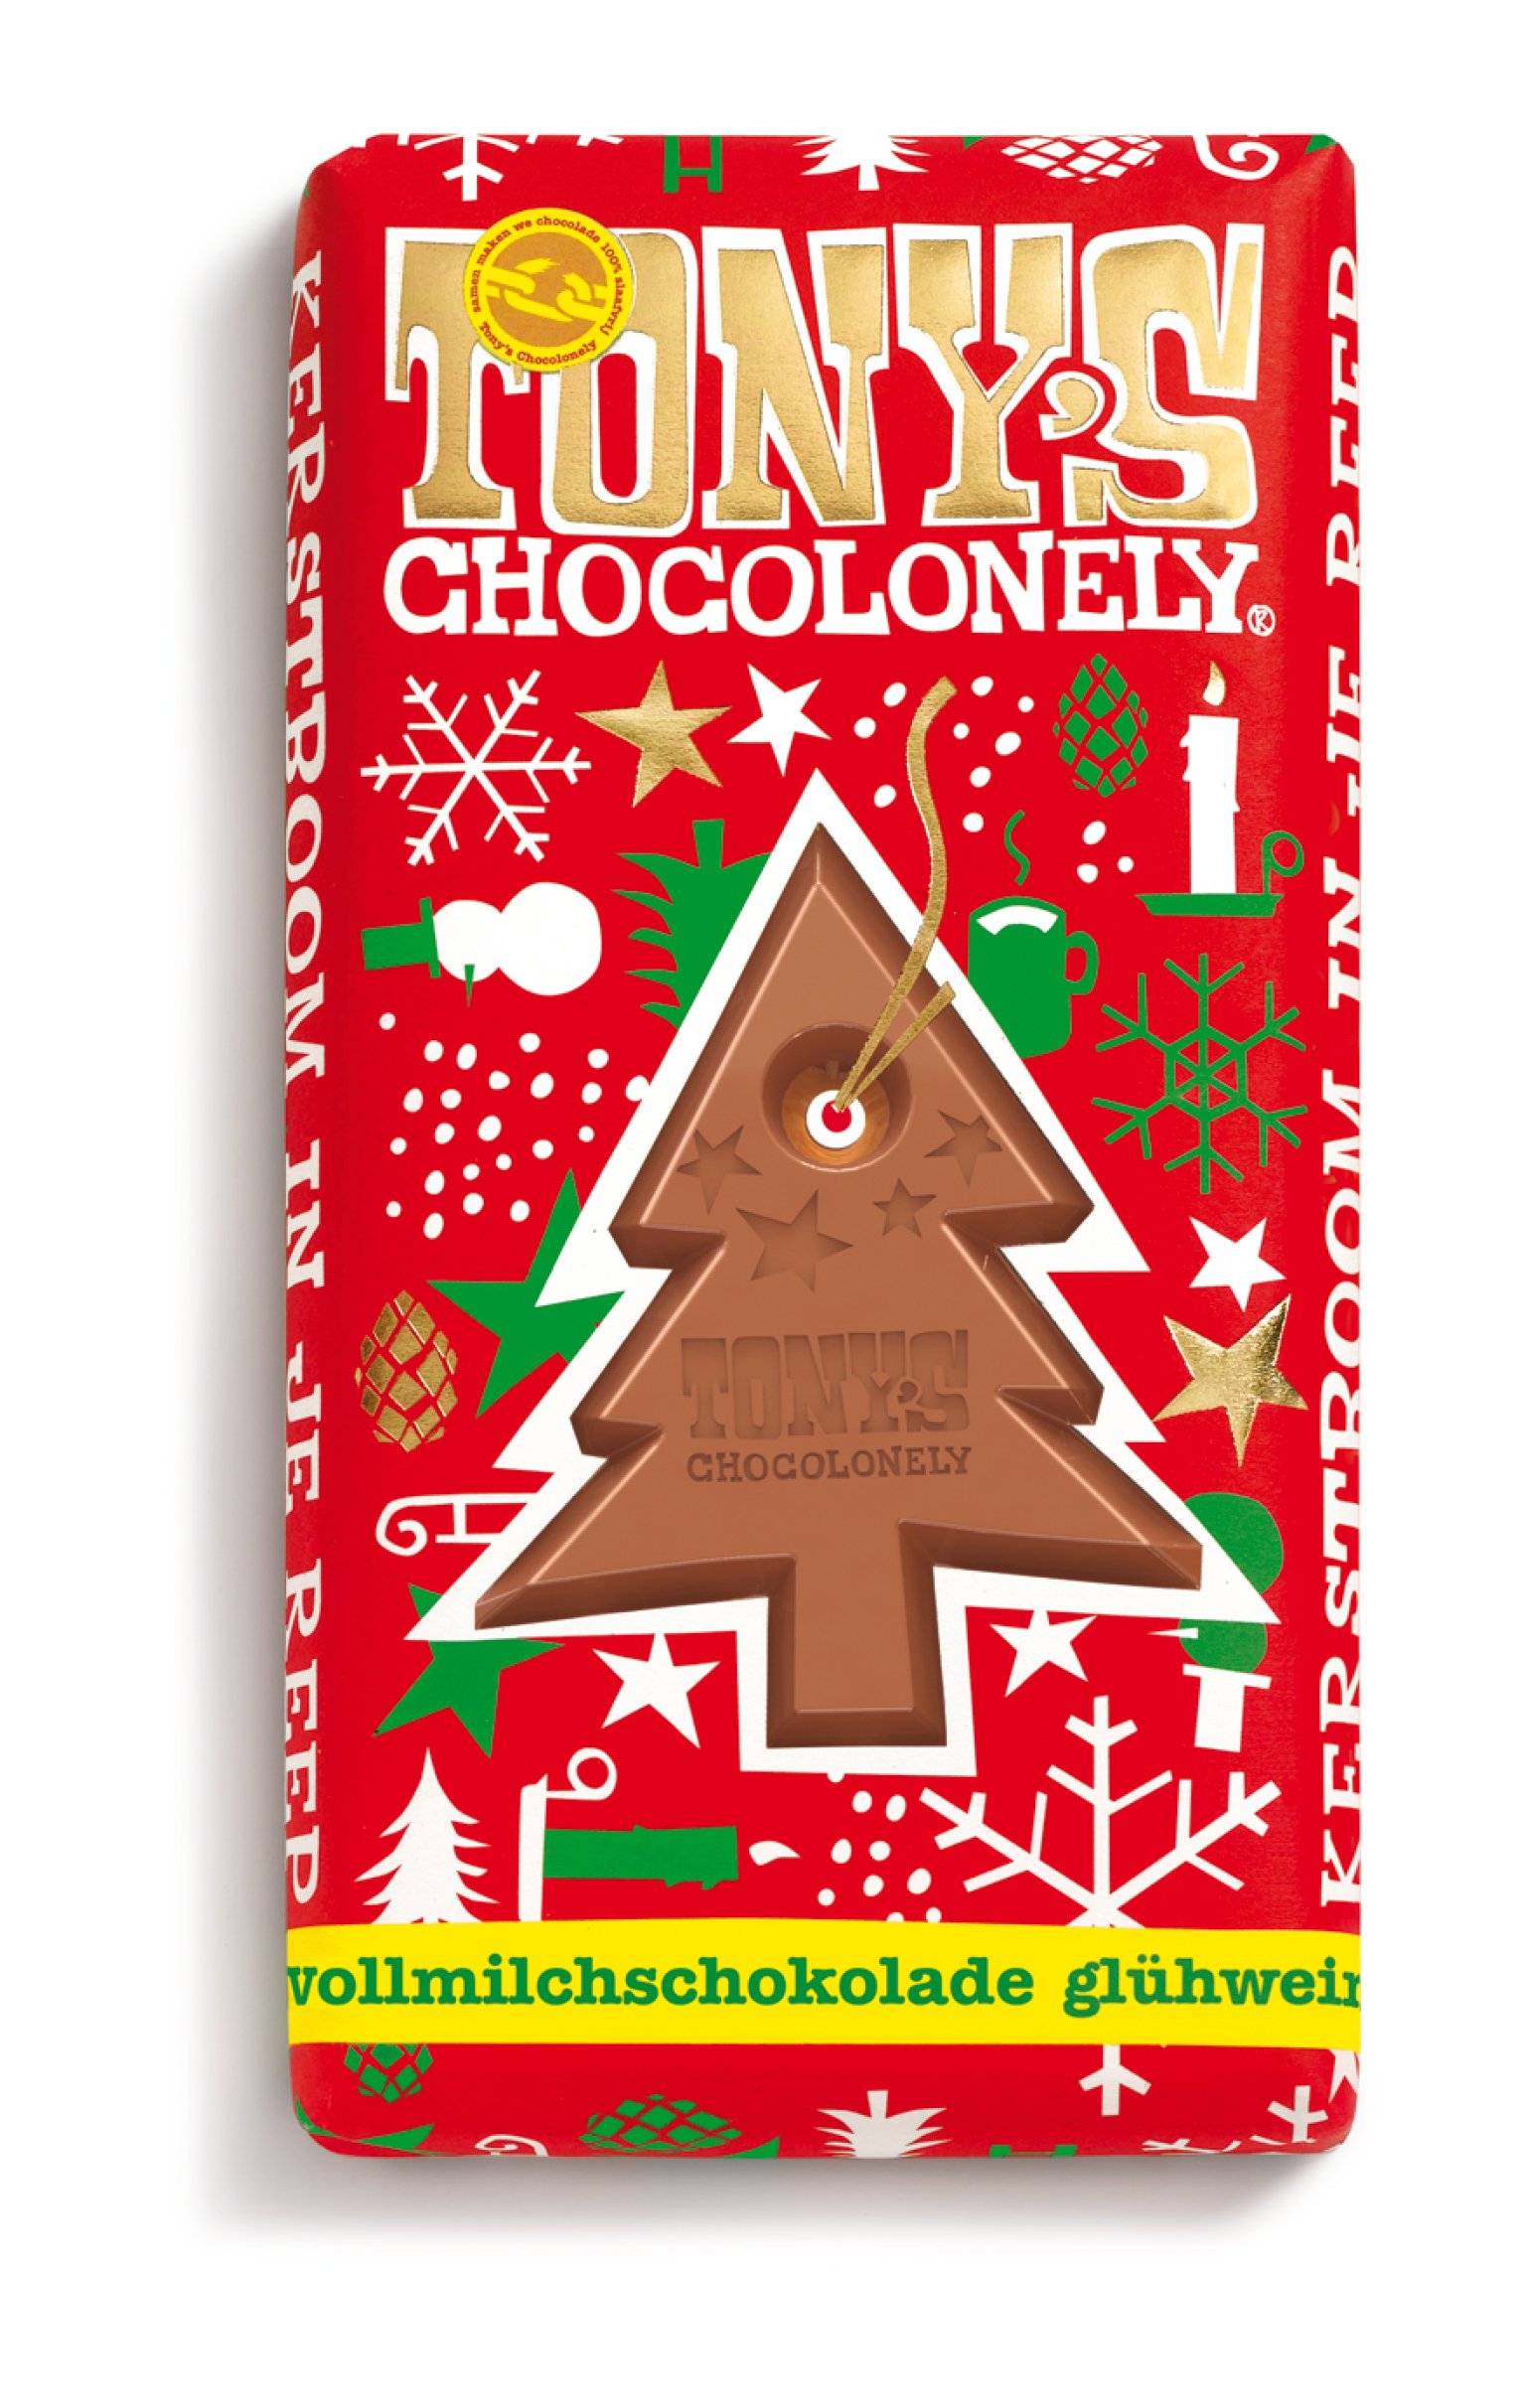 nachhaltige weihnachtssuessigkeiten: tonys chocolonely